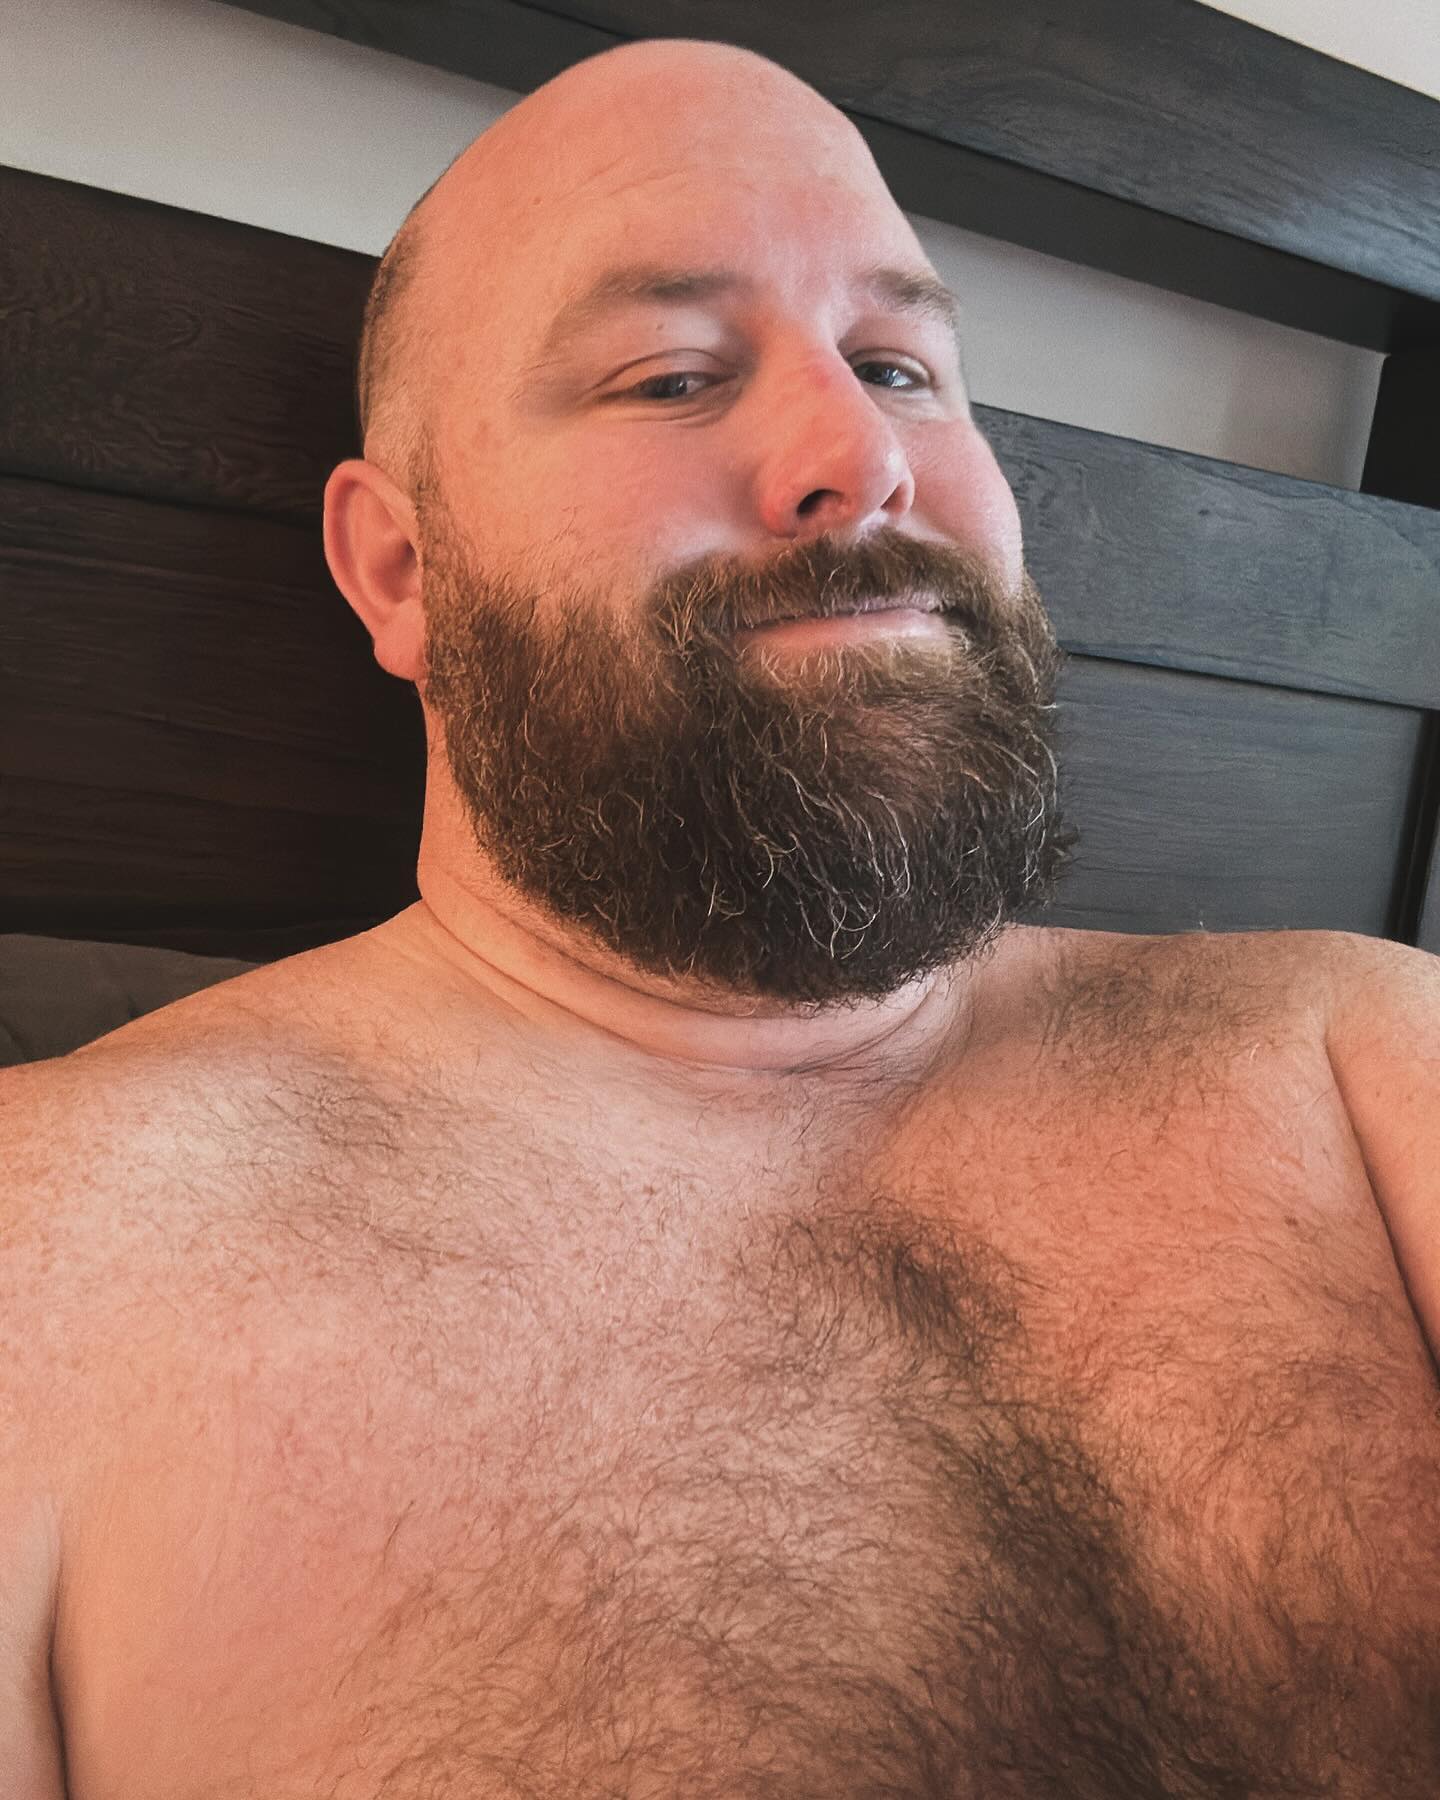 Work from home Mondays. 
#bearlove #bearstagram #hairyscruffhomo #hairyscruff #stockybears #beardedhomo #hairybearlife #hairybeardedcub #gaybear #gaybearded #gaycub #beardedgay #instagay #gay #bearsofinstagram #cubsofinstagram #hairychest #gaysofinstagram #scruff #bear #hairy #fur